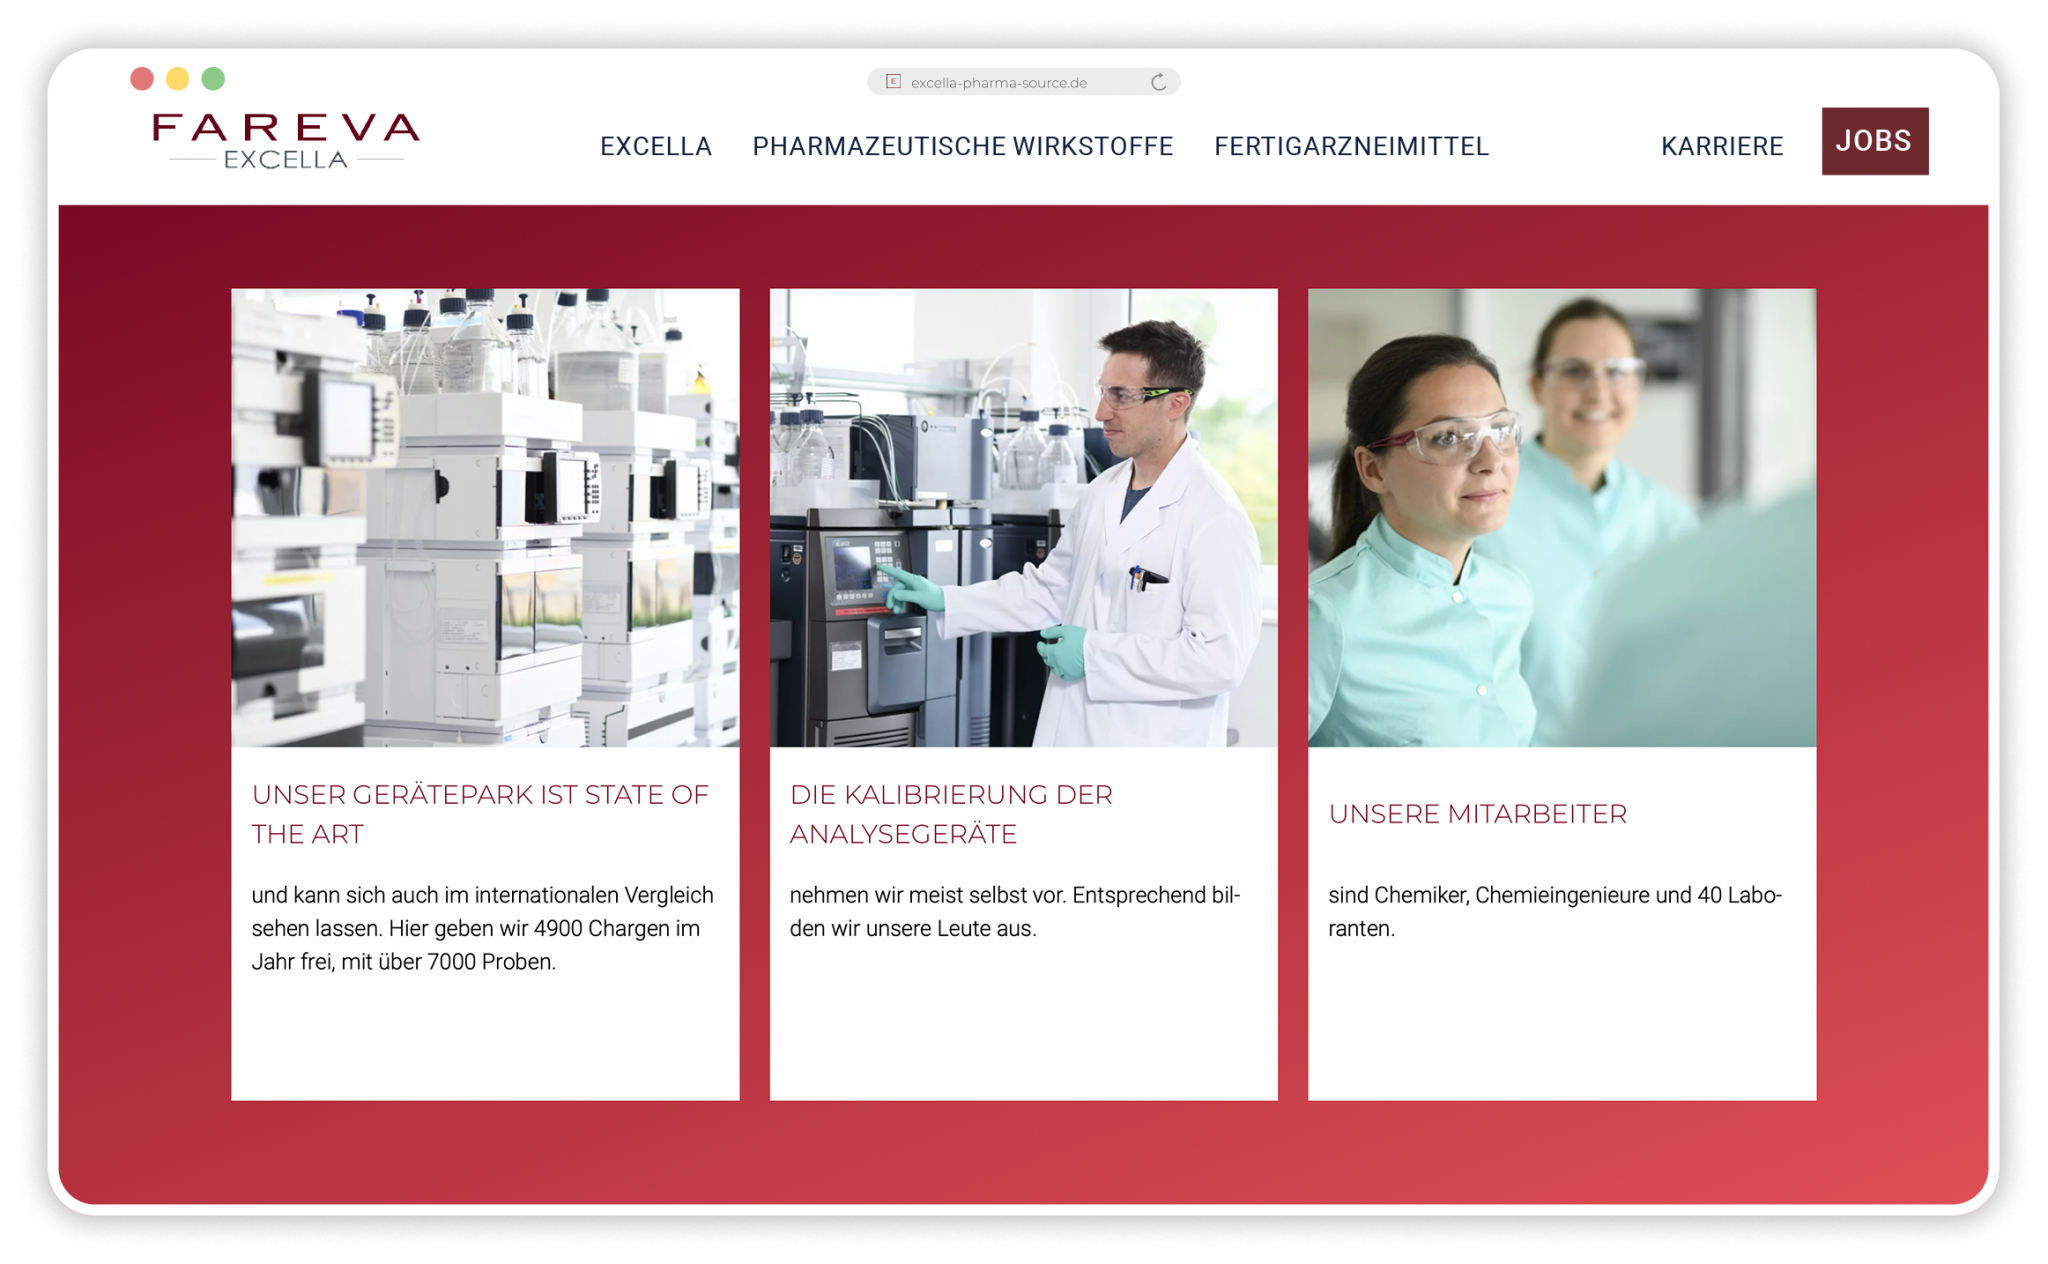 Excella Website 12 - Webdesign, Pharma, Employer Branding, Agentur Heldenstreich Würzburg